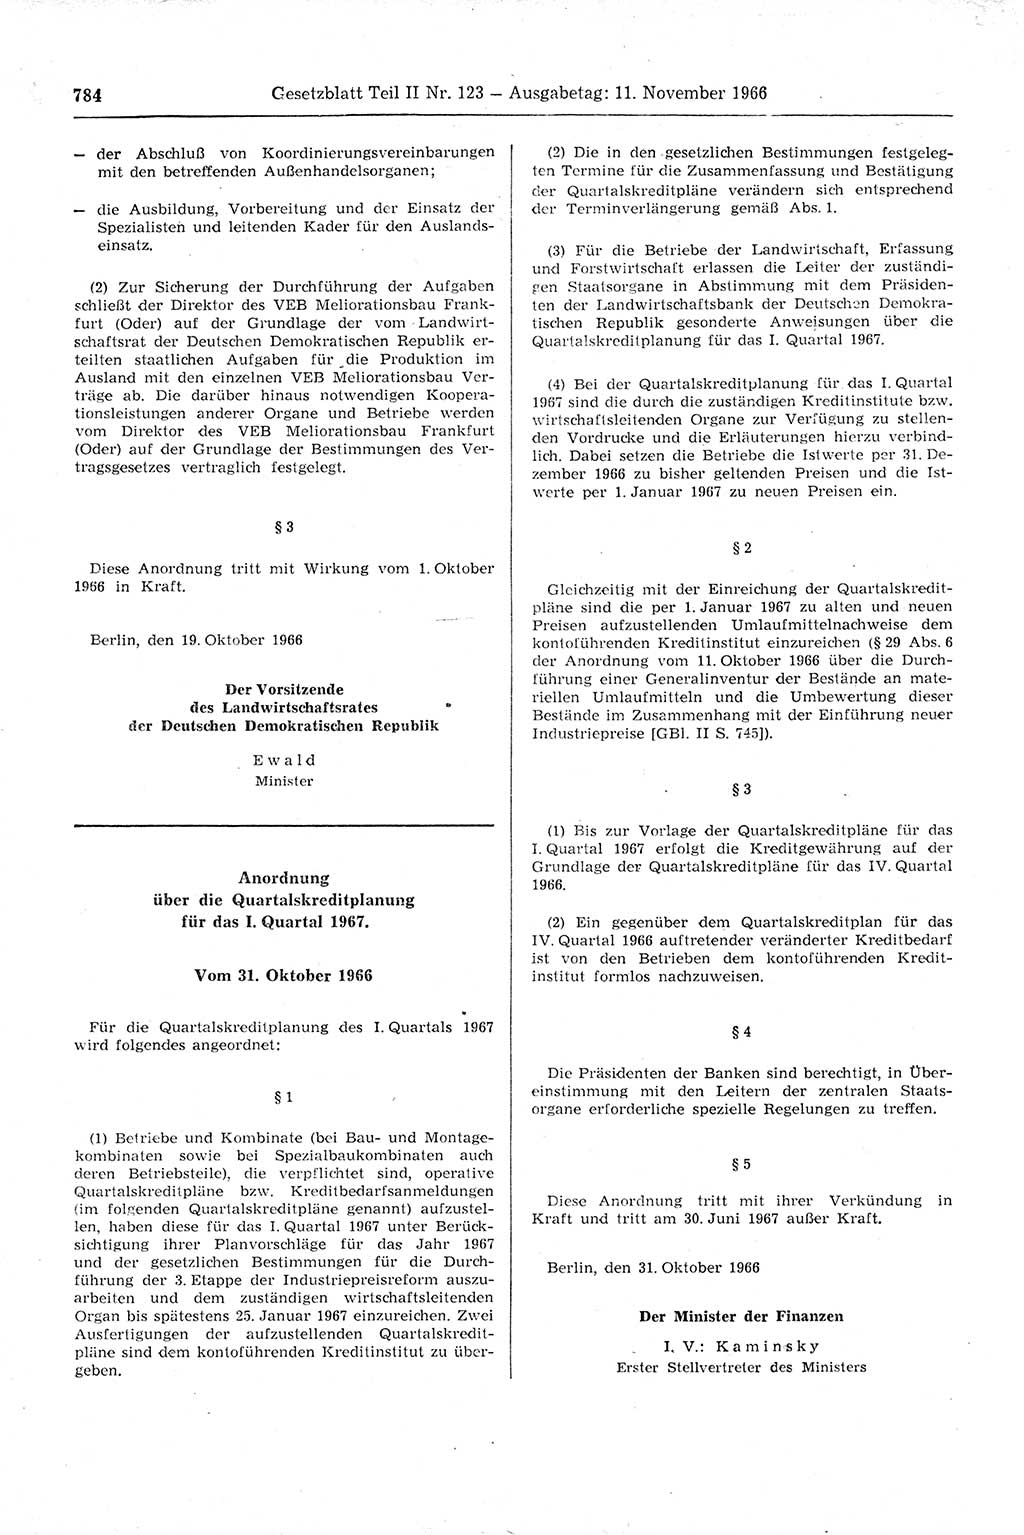 Gesetzblatt (GBl.) der Deutschen Demokratischen Republik (DDR) Teil ⅠⅠ 1966, Seite 784 (GBl. DDR ⅠⅠ 1966, S. 784)